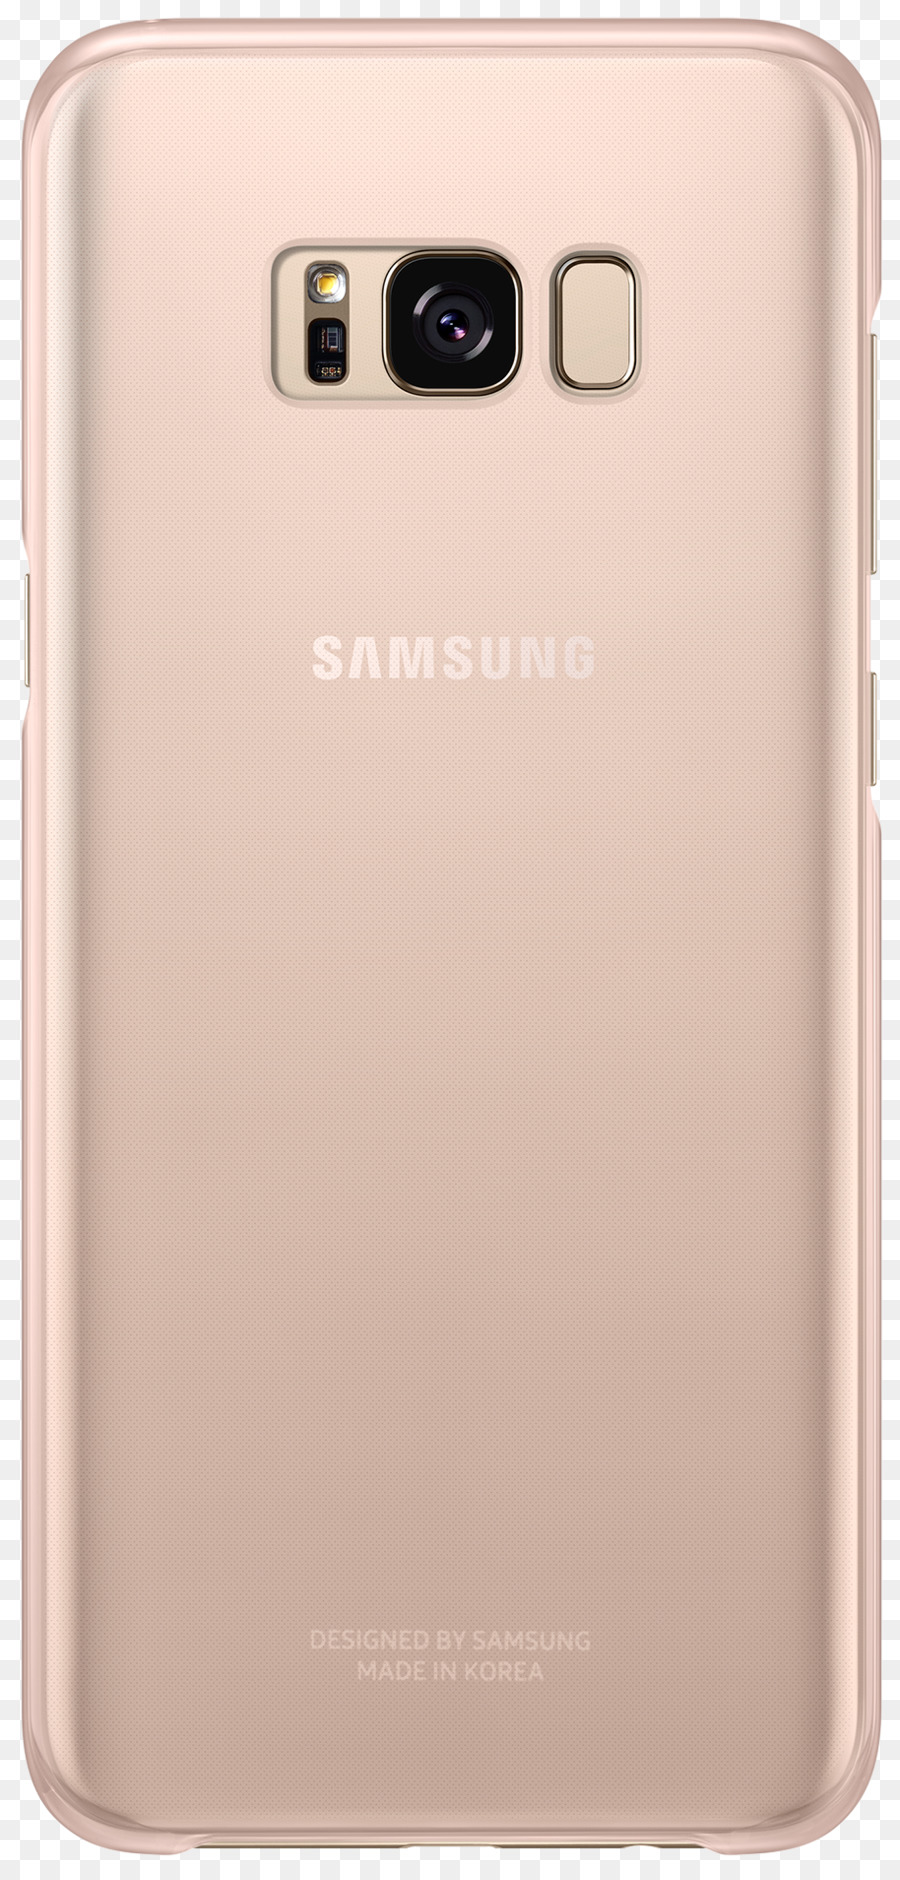 Samsung，термопластичный полиуретан PNG